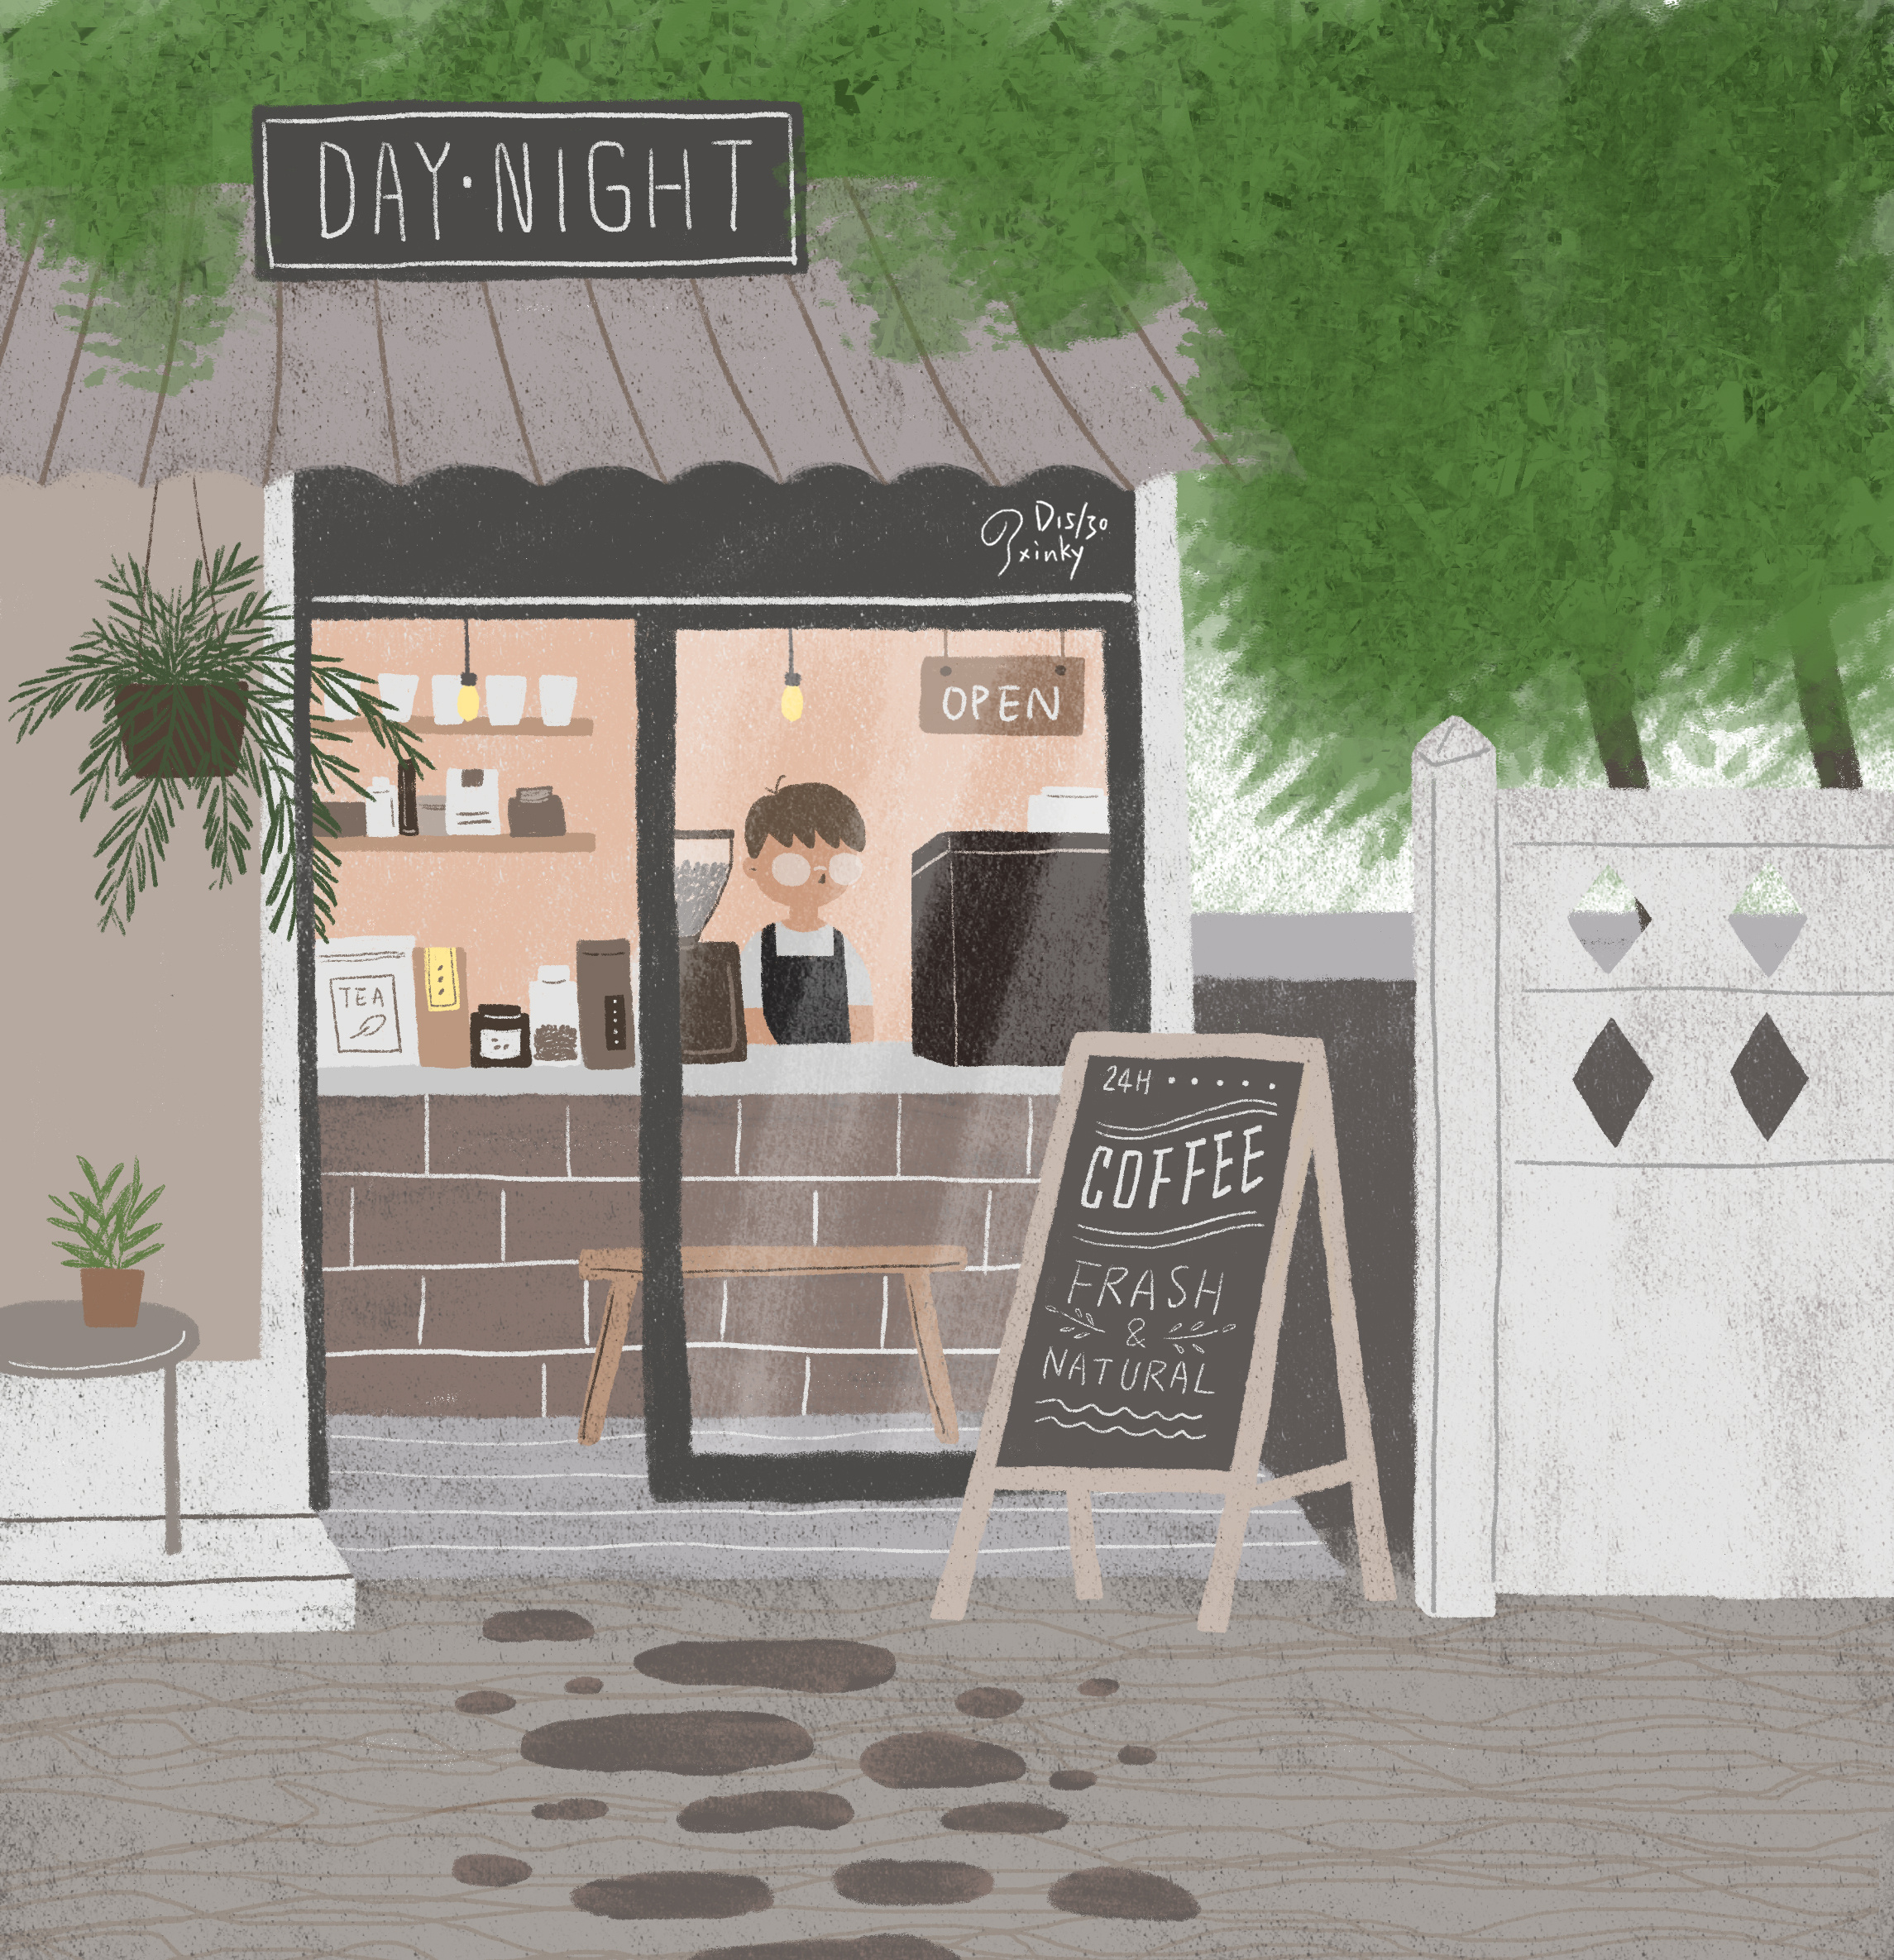 咖啡店背景图动漫图片